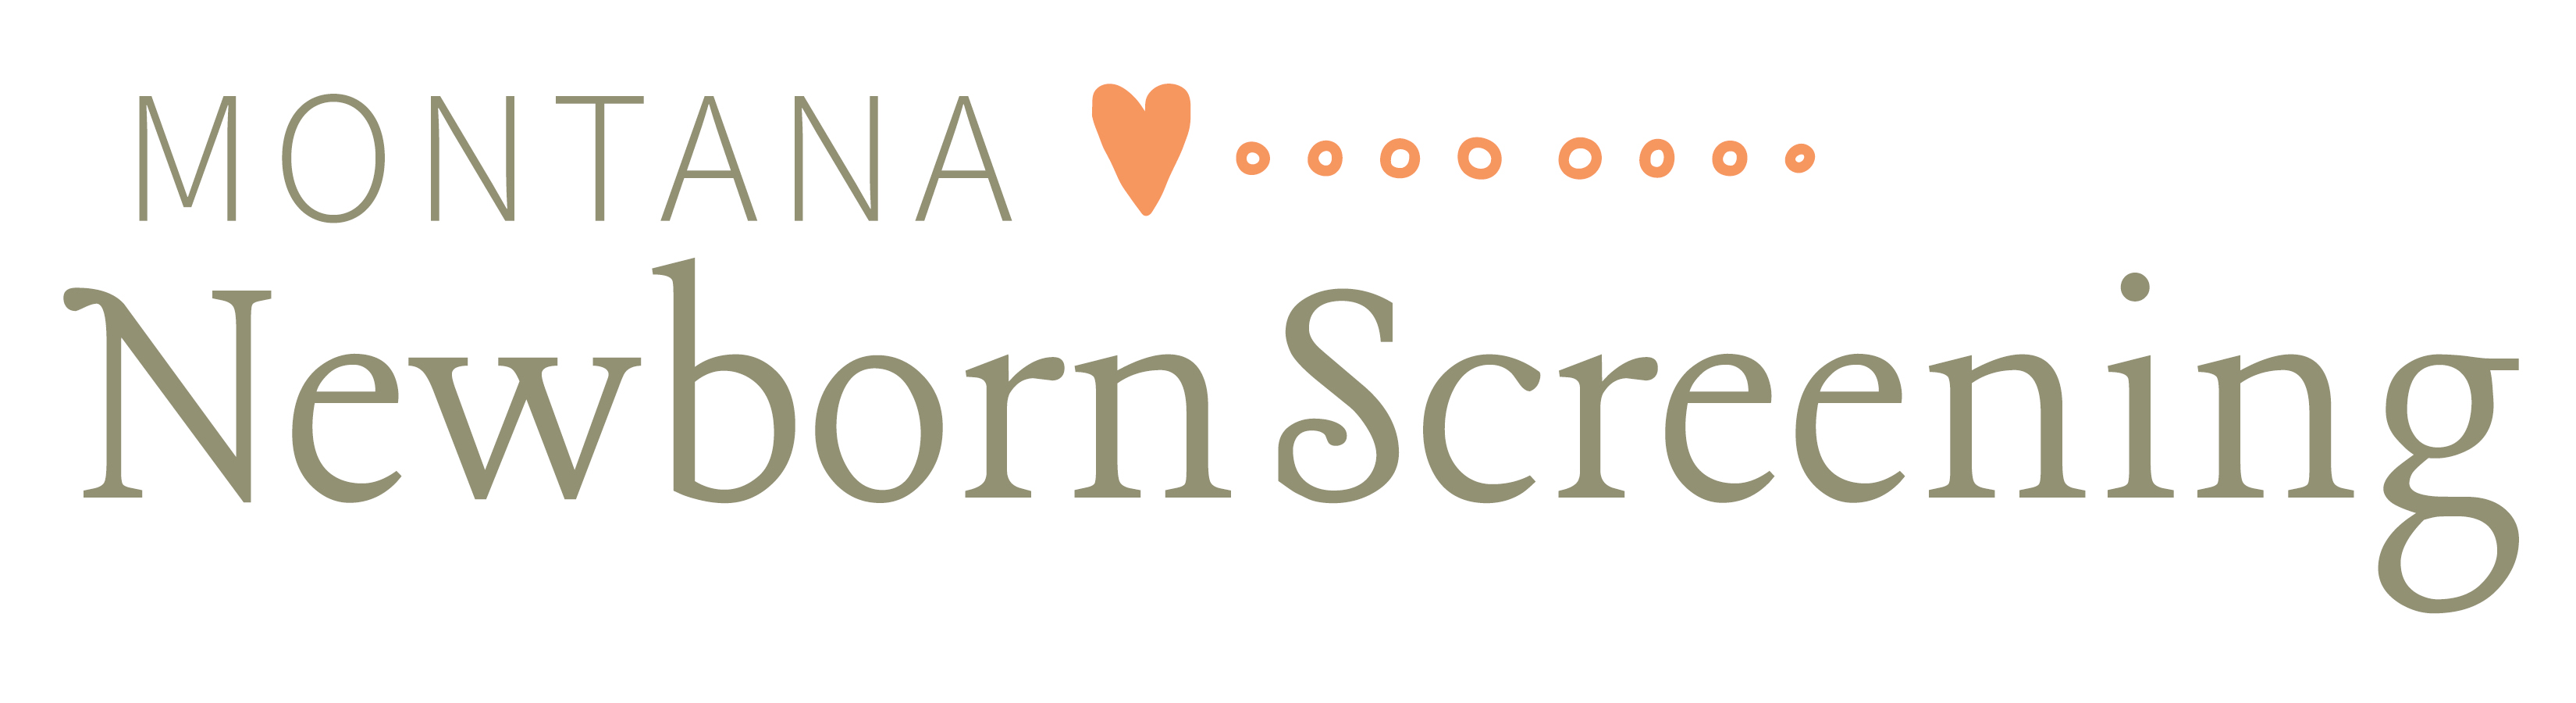 Montana Newborn Screening logo